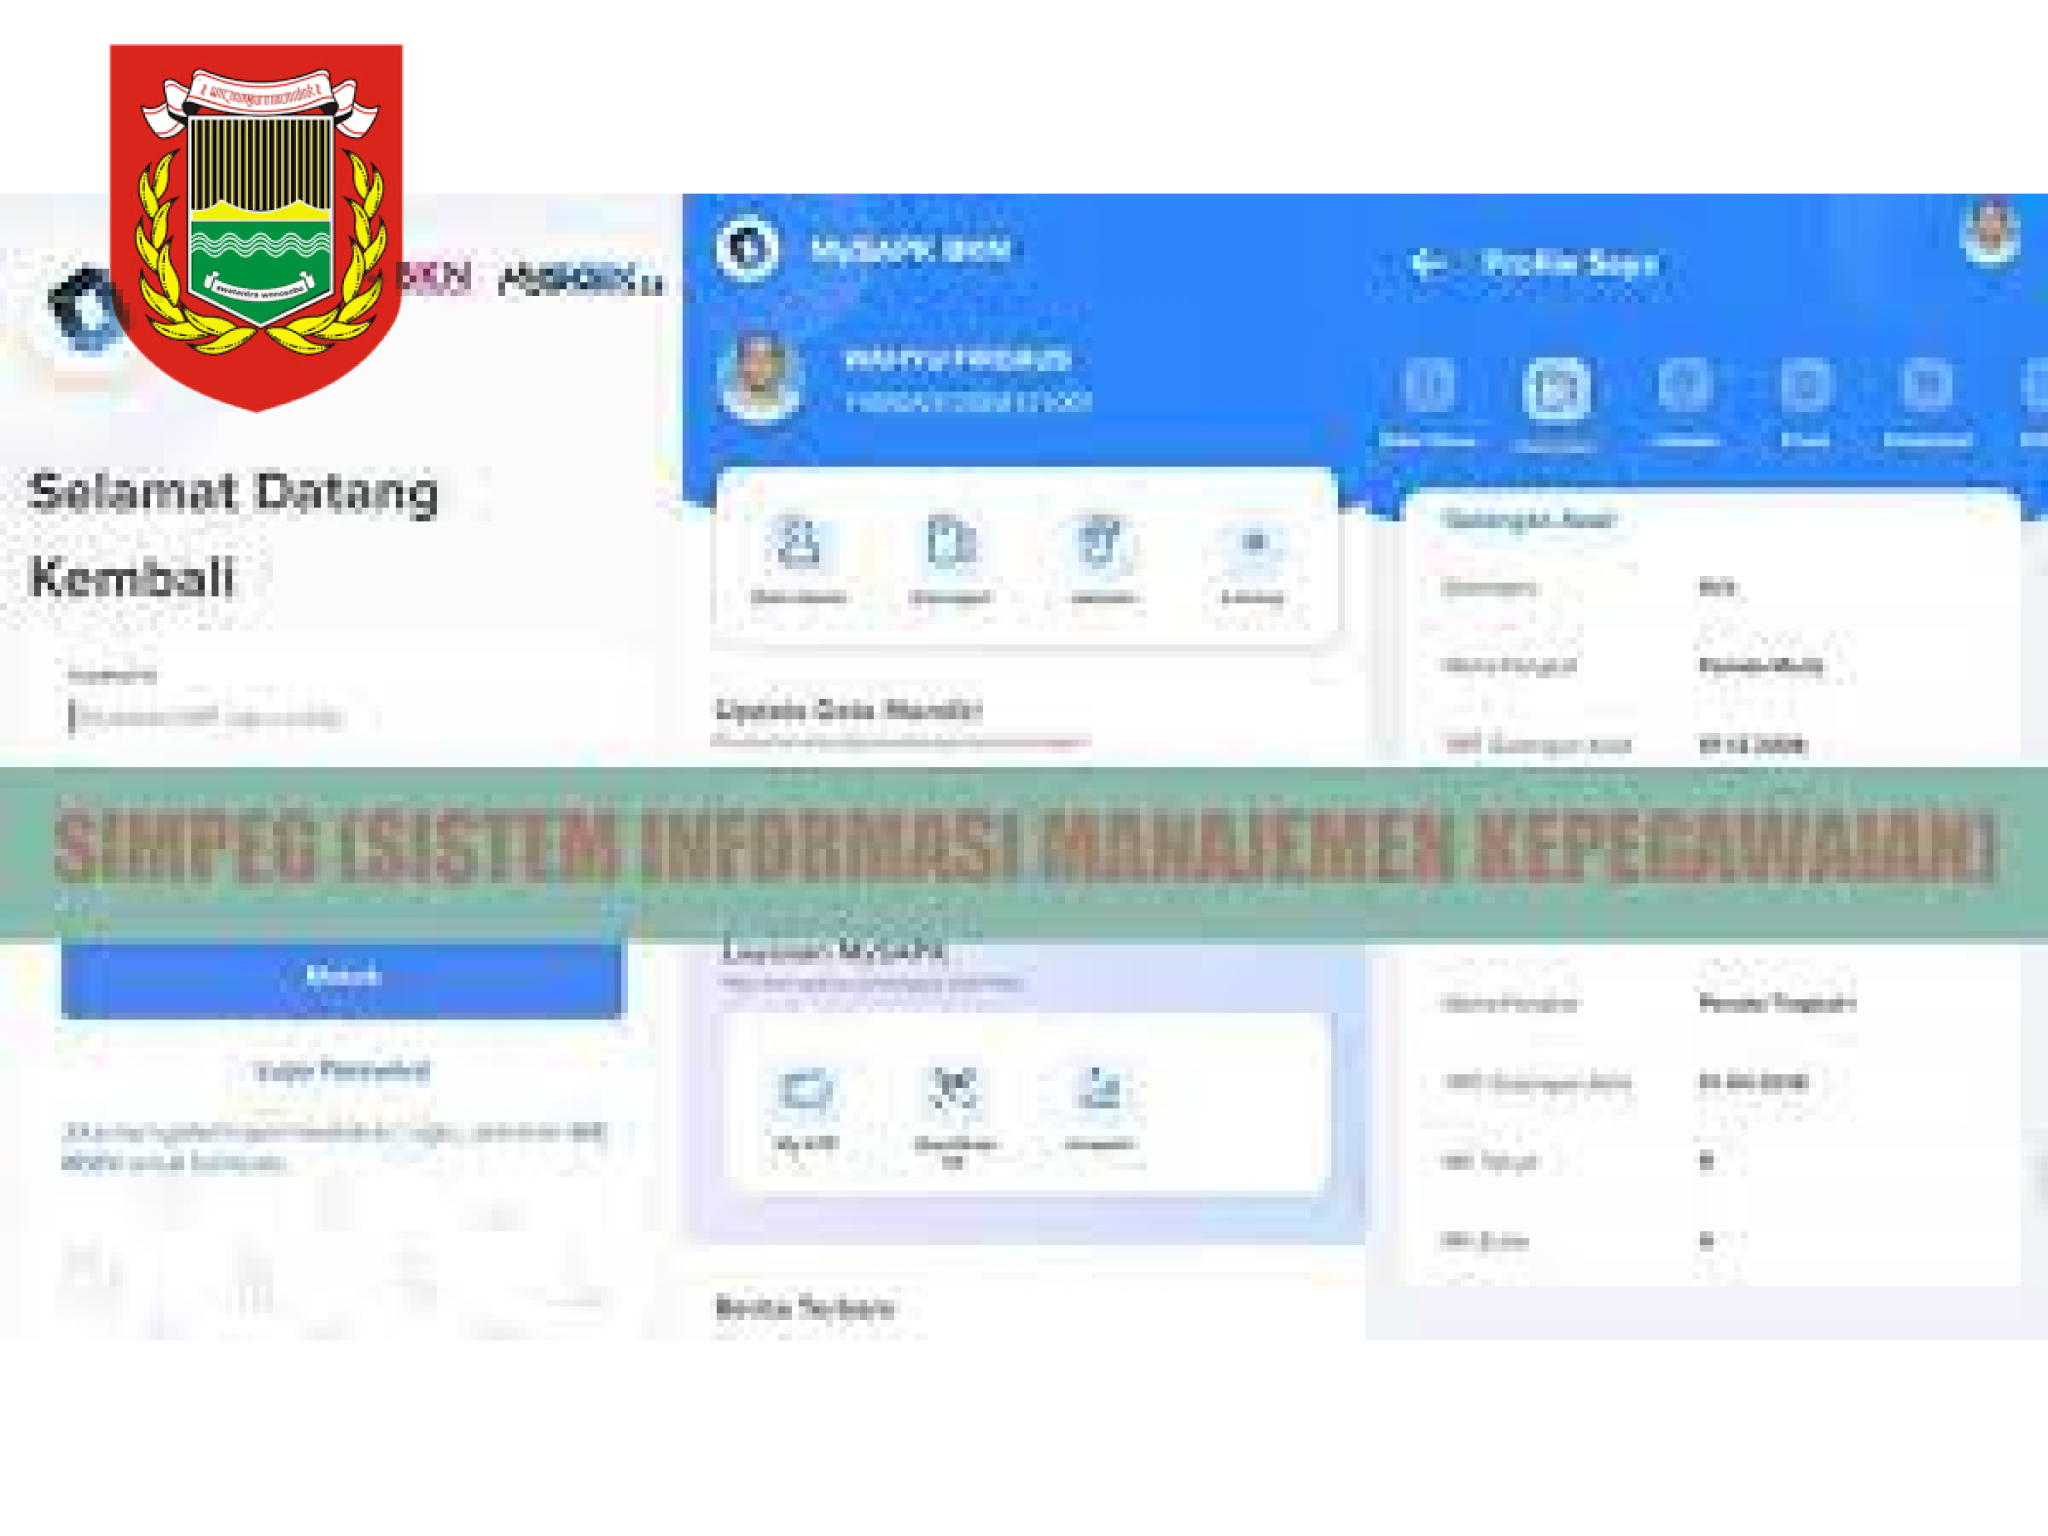 Sistem Informasi Manajemen Kepegawaian (SIMPEG) Kabupaten Wonosobo